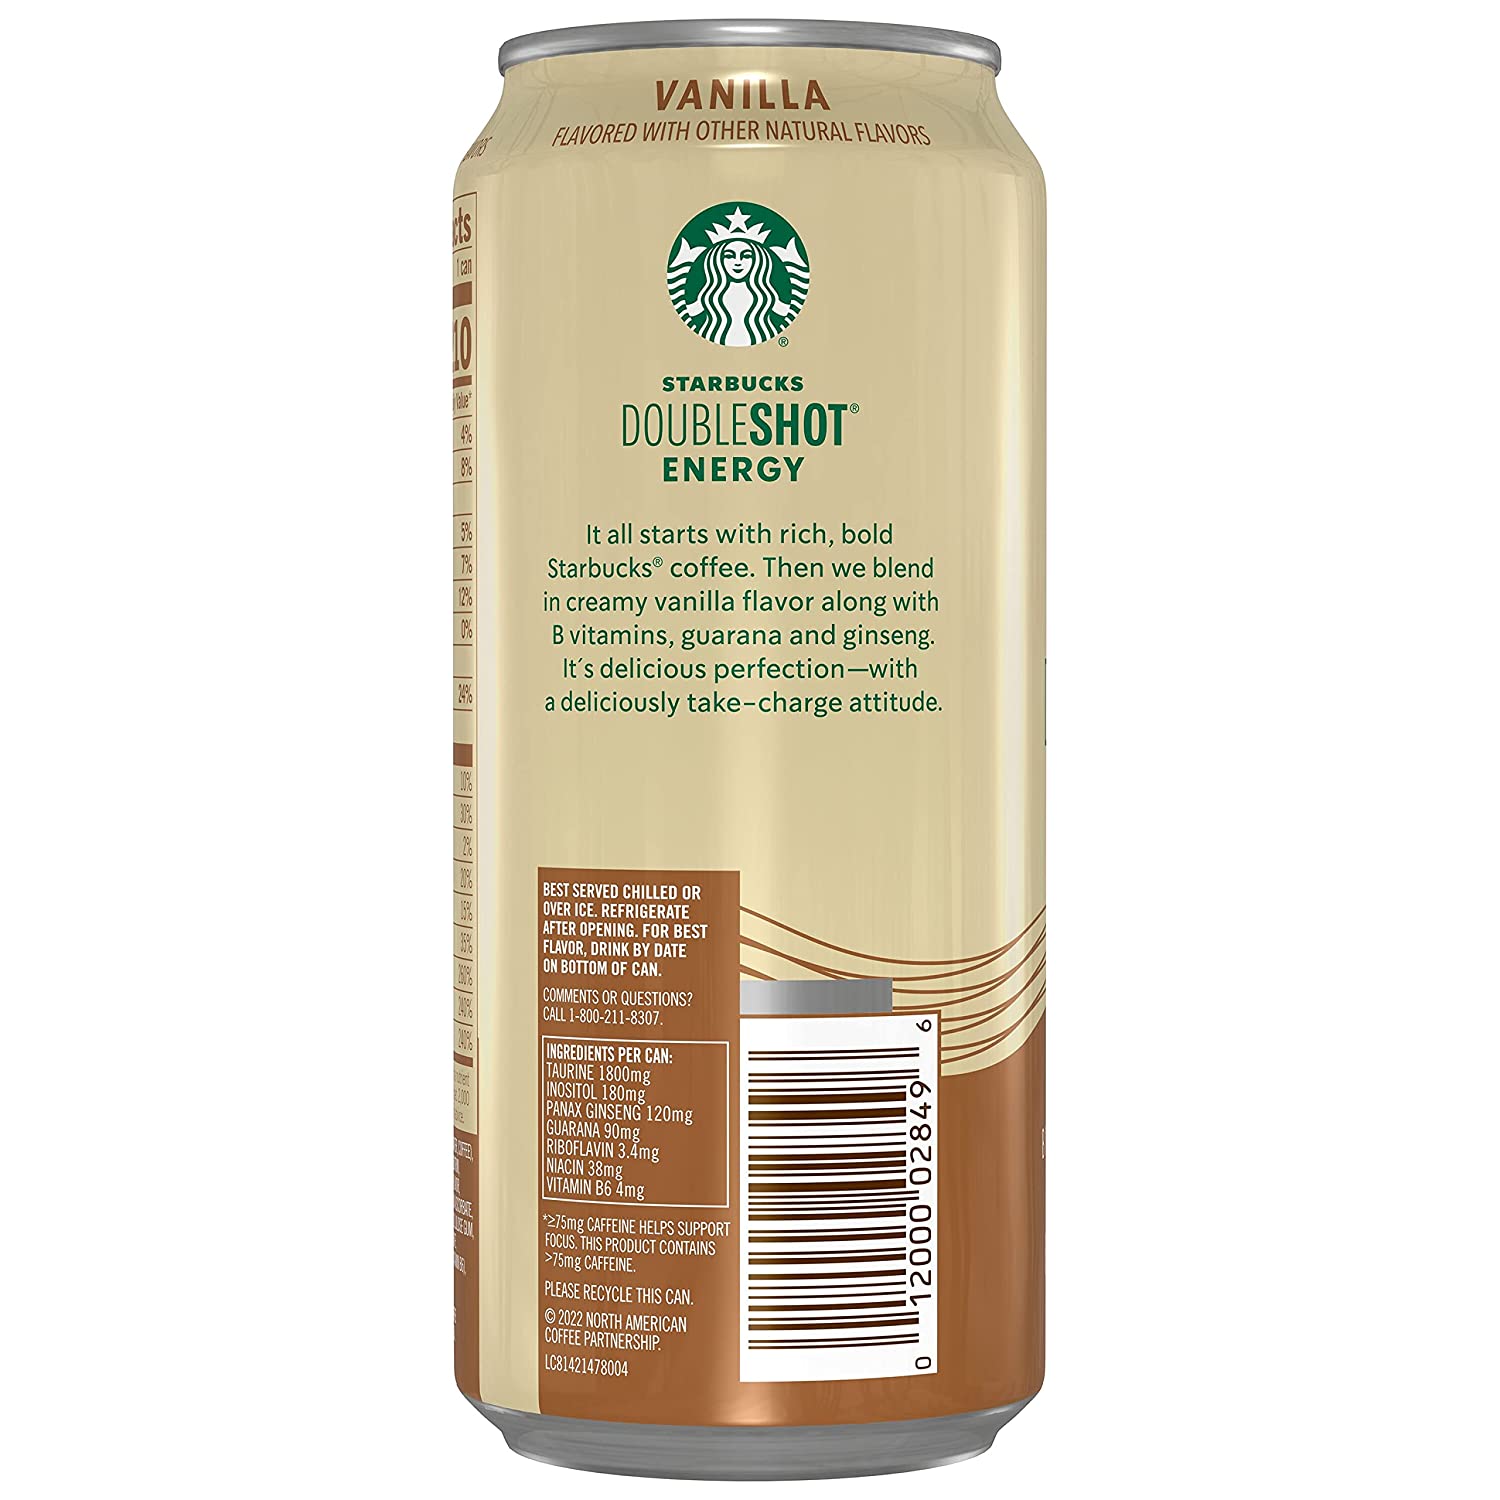 Starbucks Doubleshot Energy 15 oz - 12 Pack-3